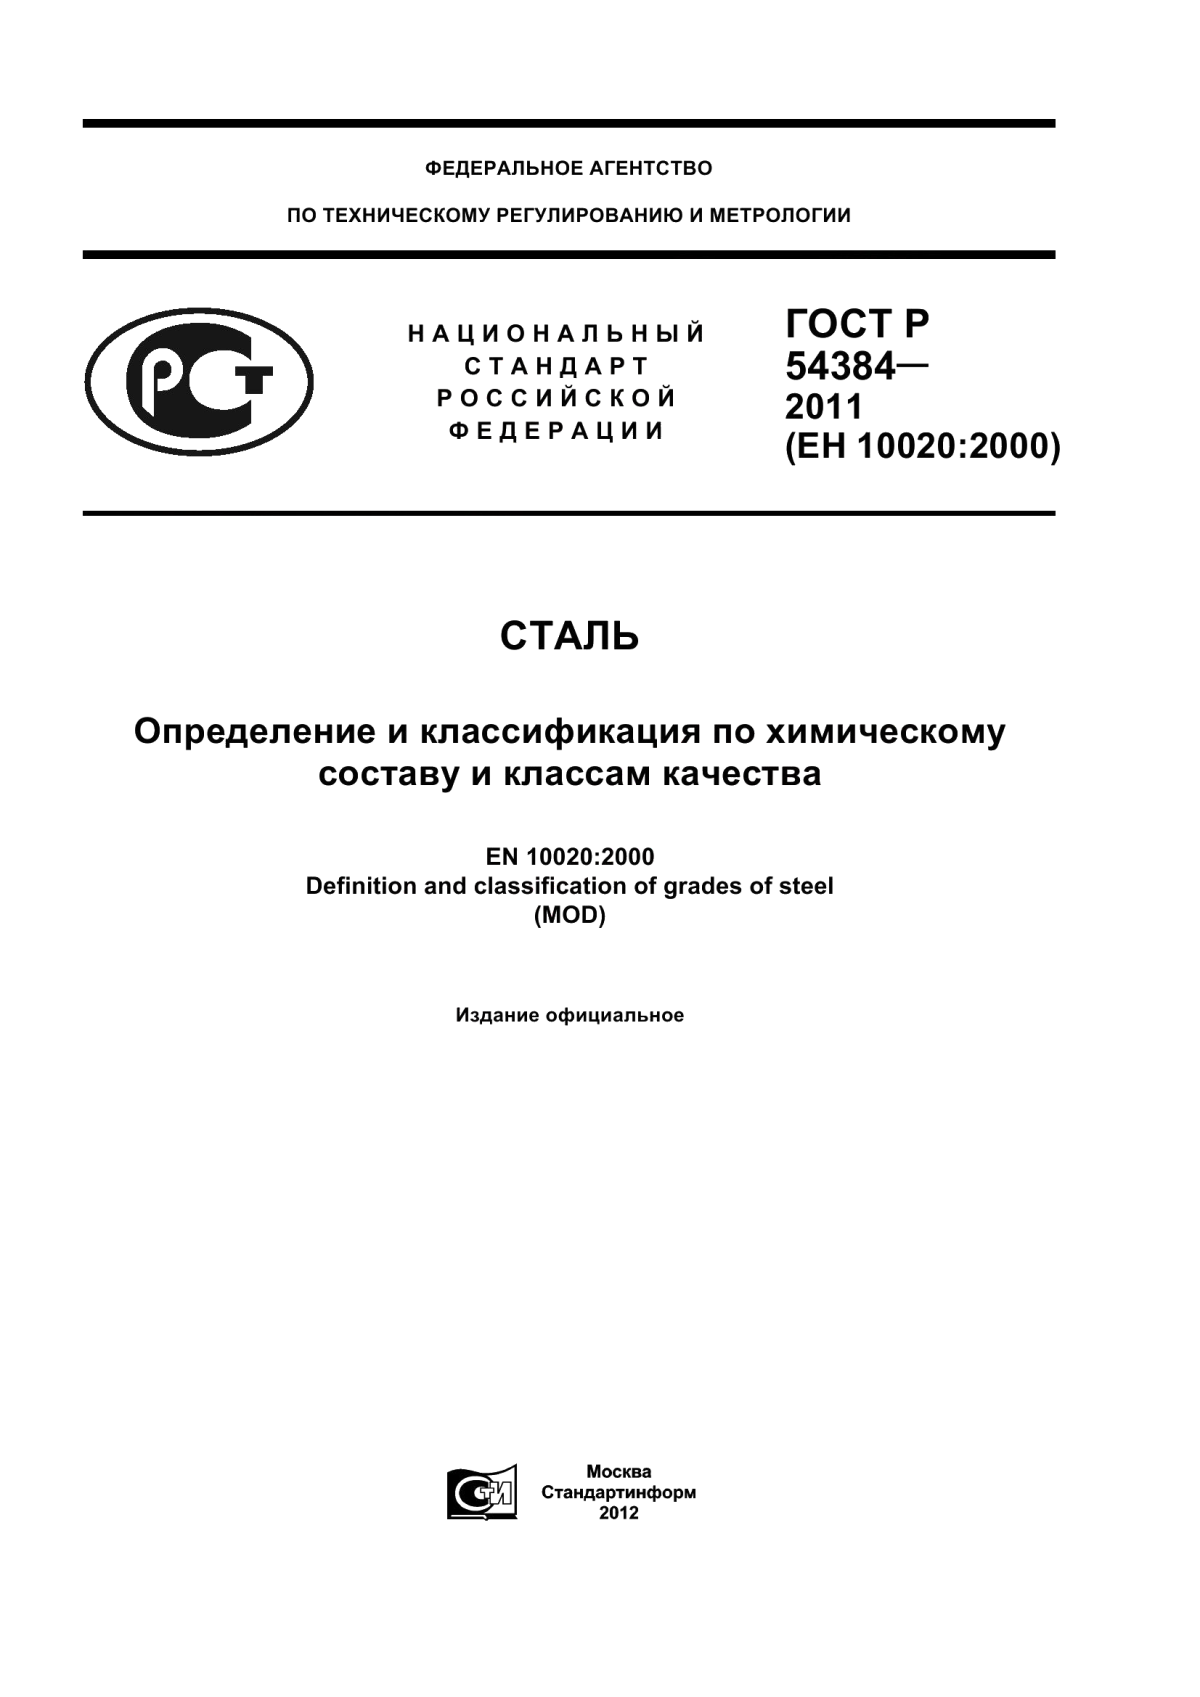 ГОСТ Р 54384-2011 Сталь. Определение и классификация по химическому составу и классам качества